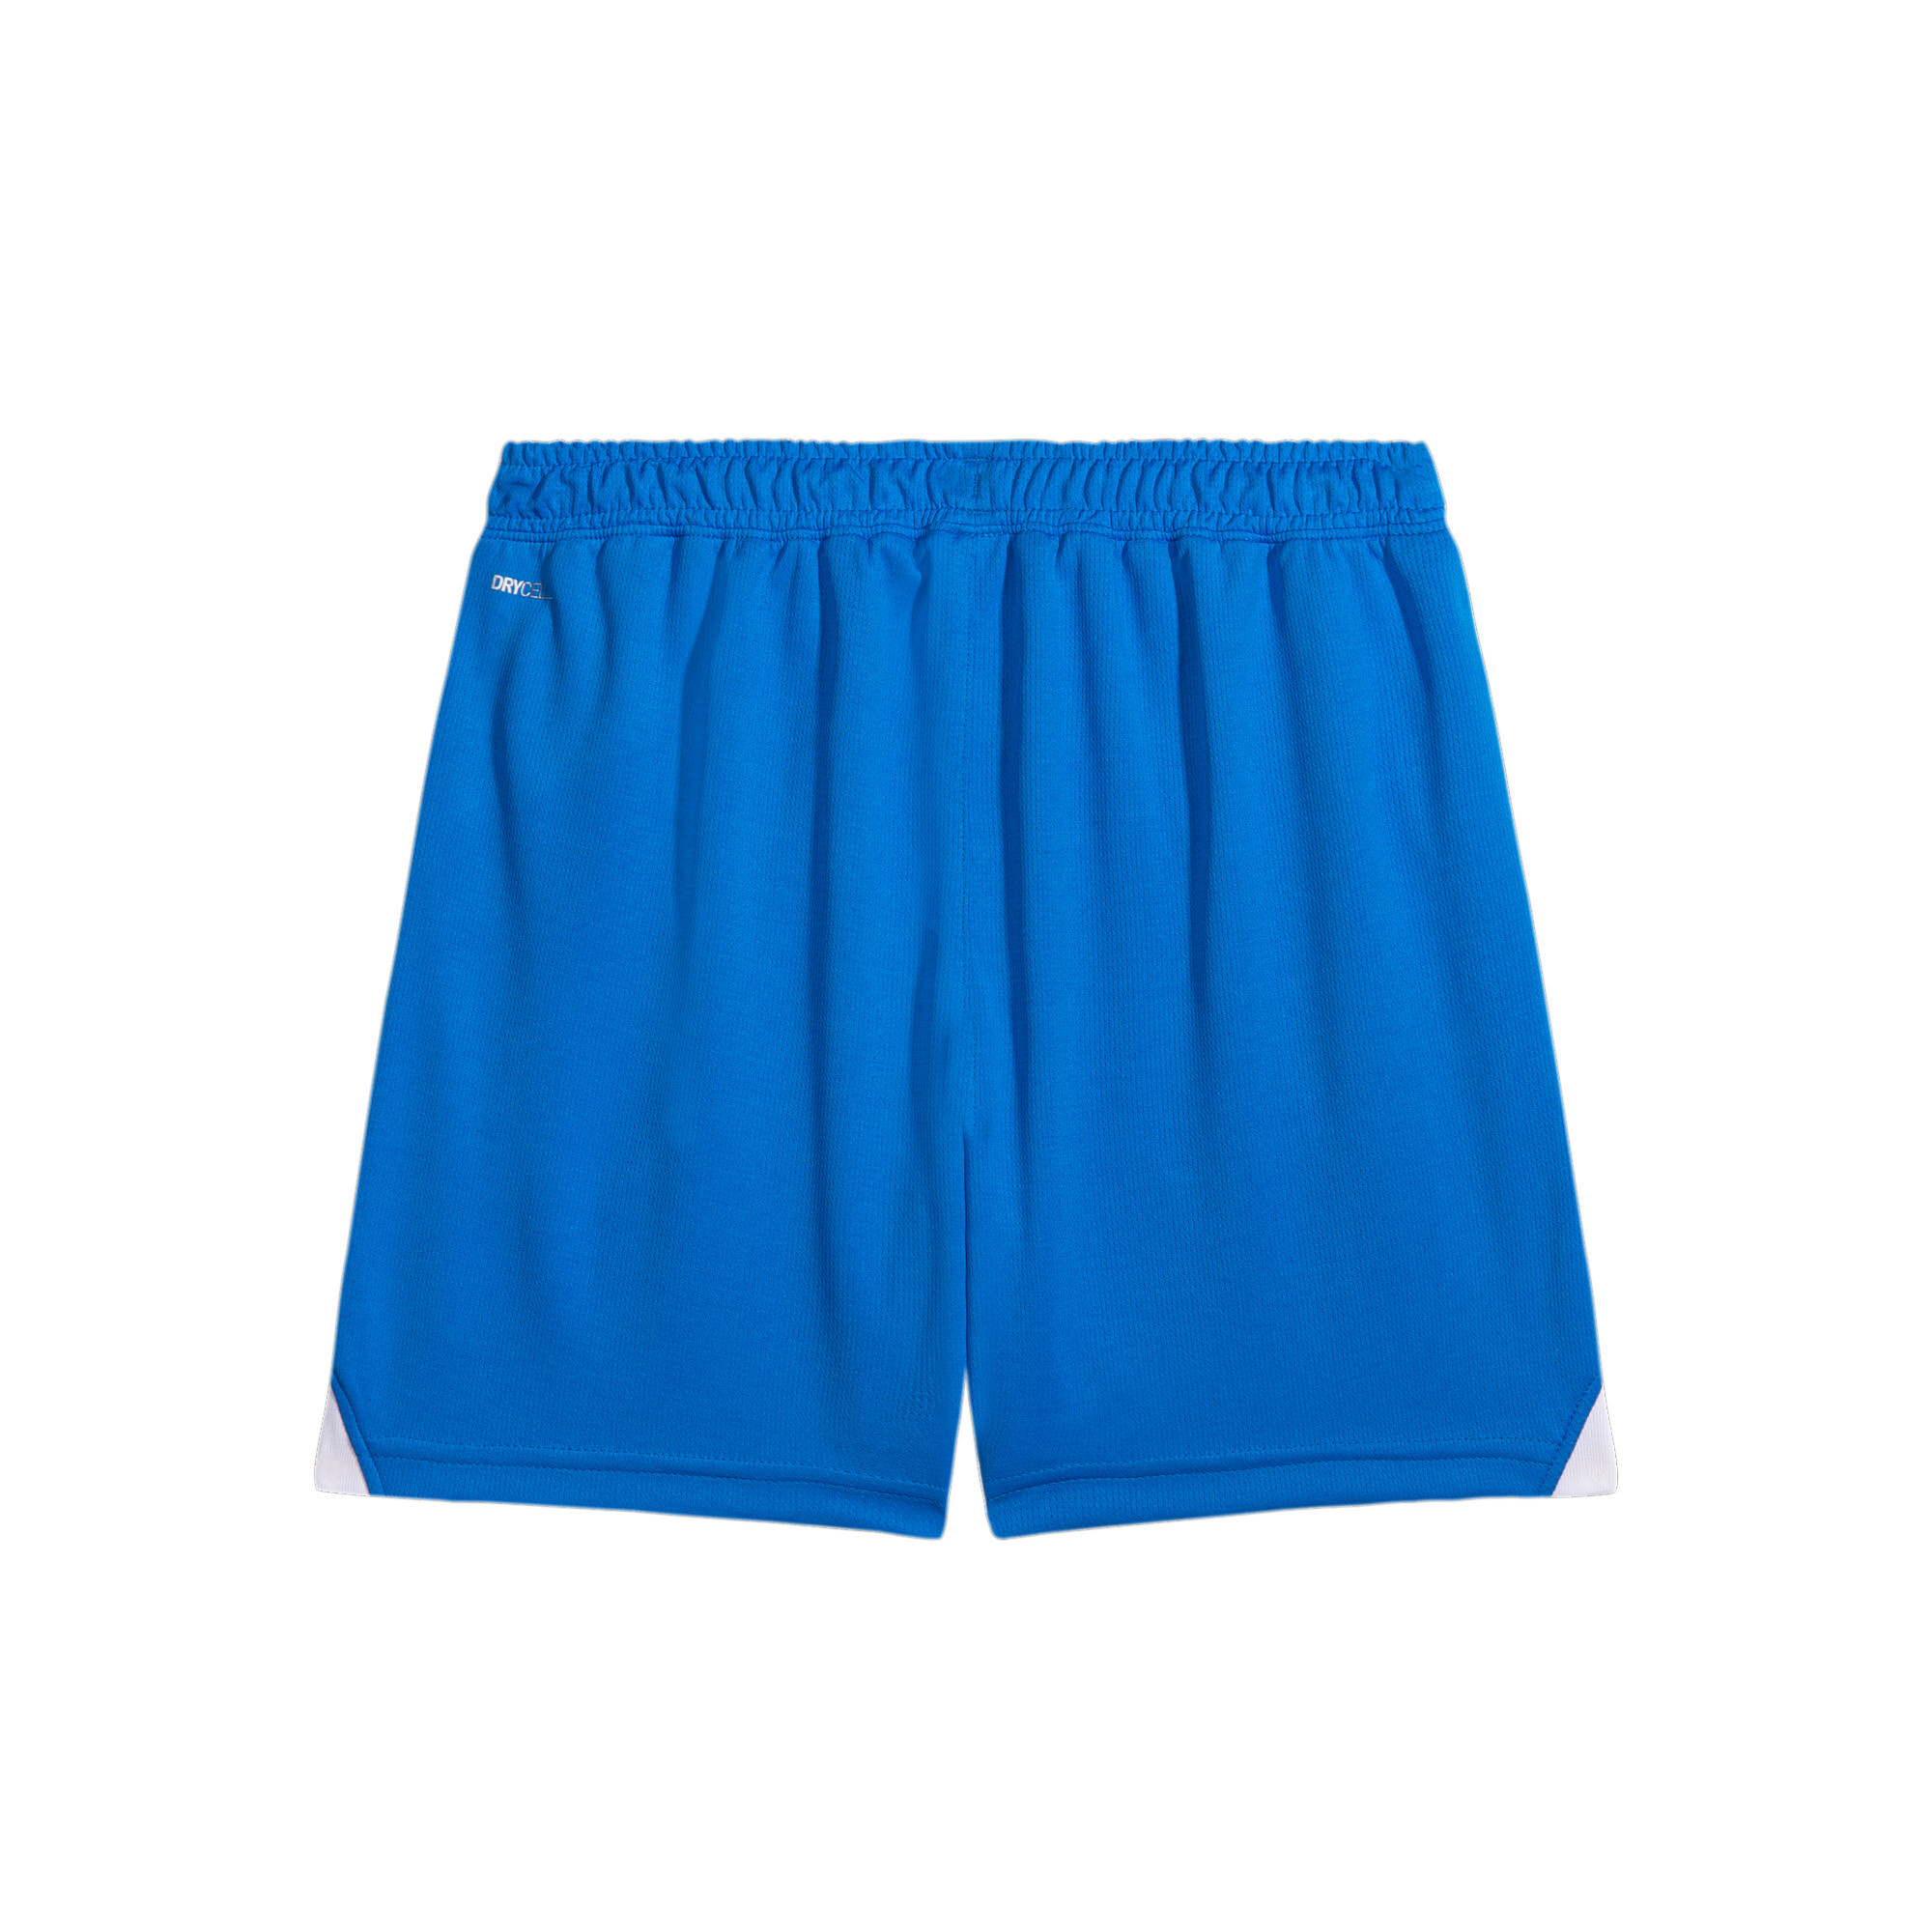 PUMA Al Hilal 23/24 Replica Shorts In Blue, Size 4-5 Youth